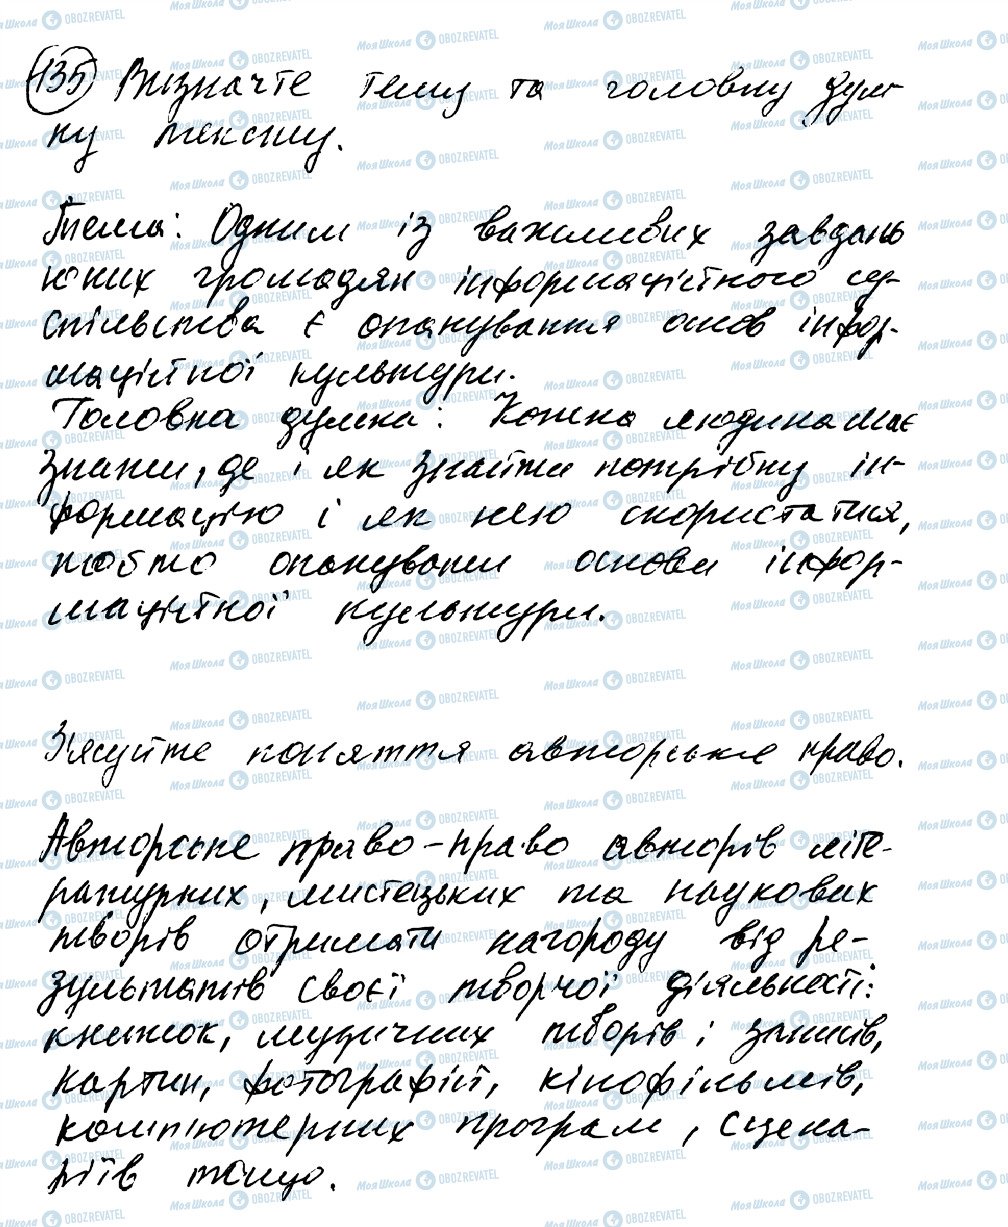 ГДЗ Українська мова 8 клас сторінка 135